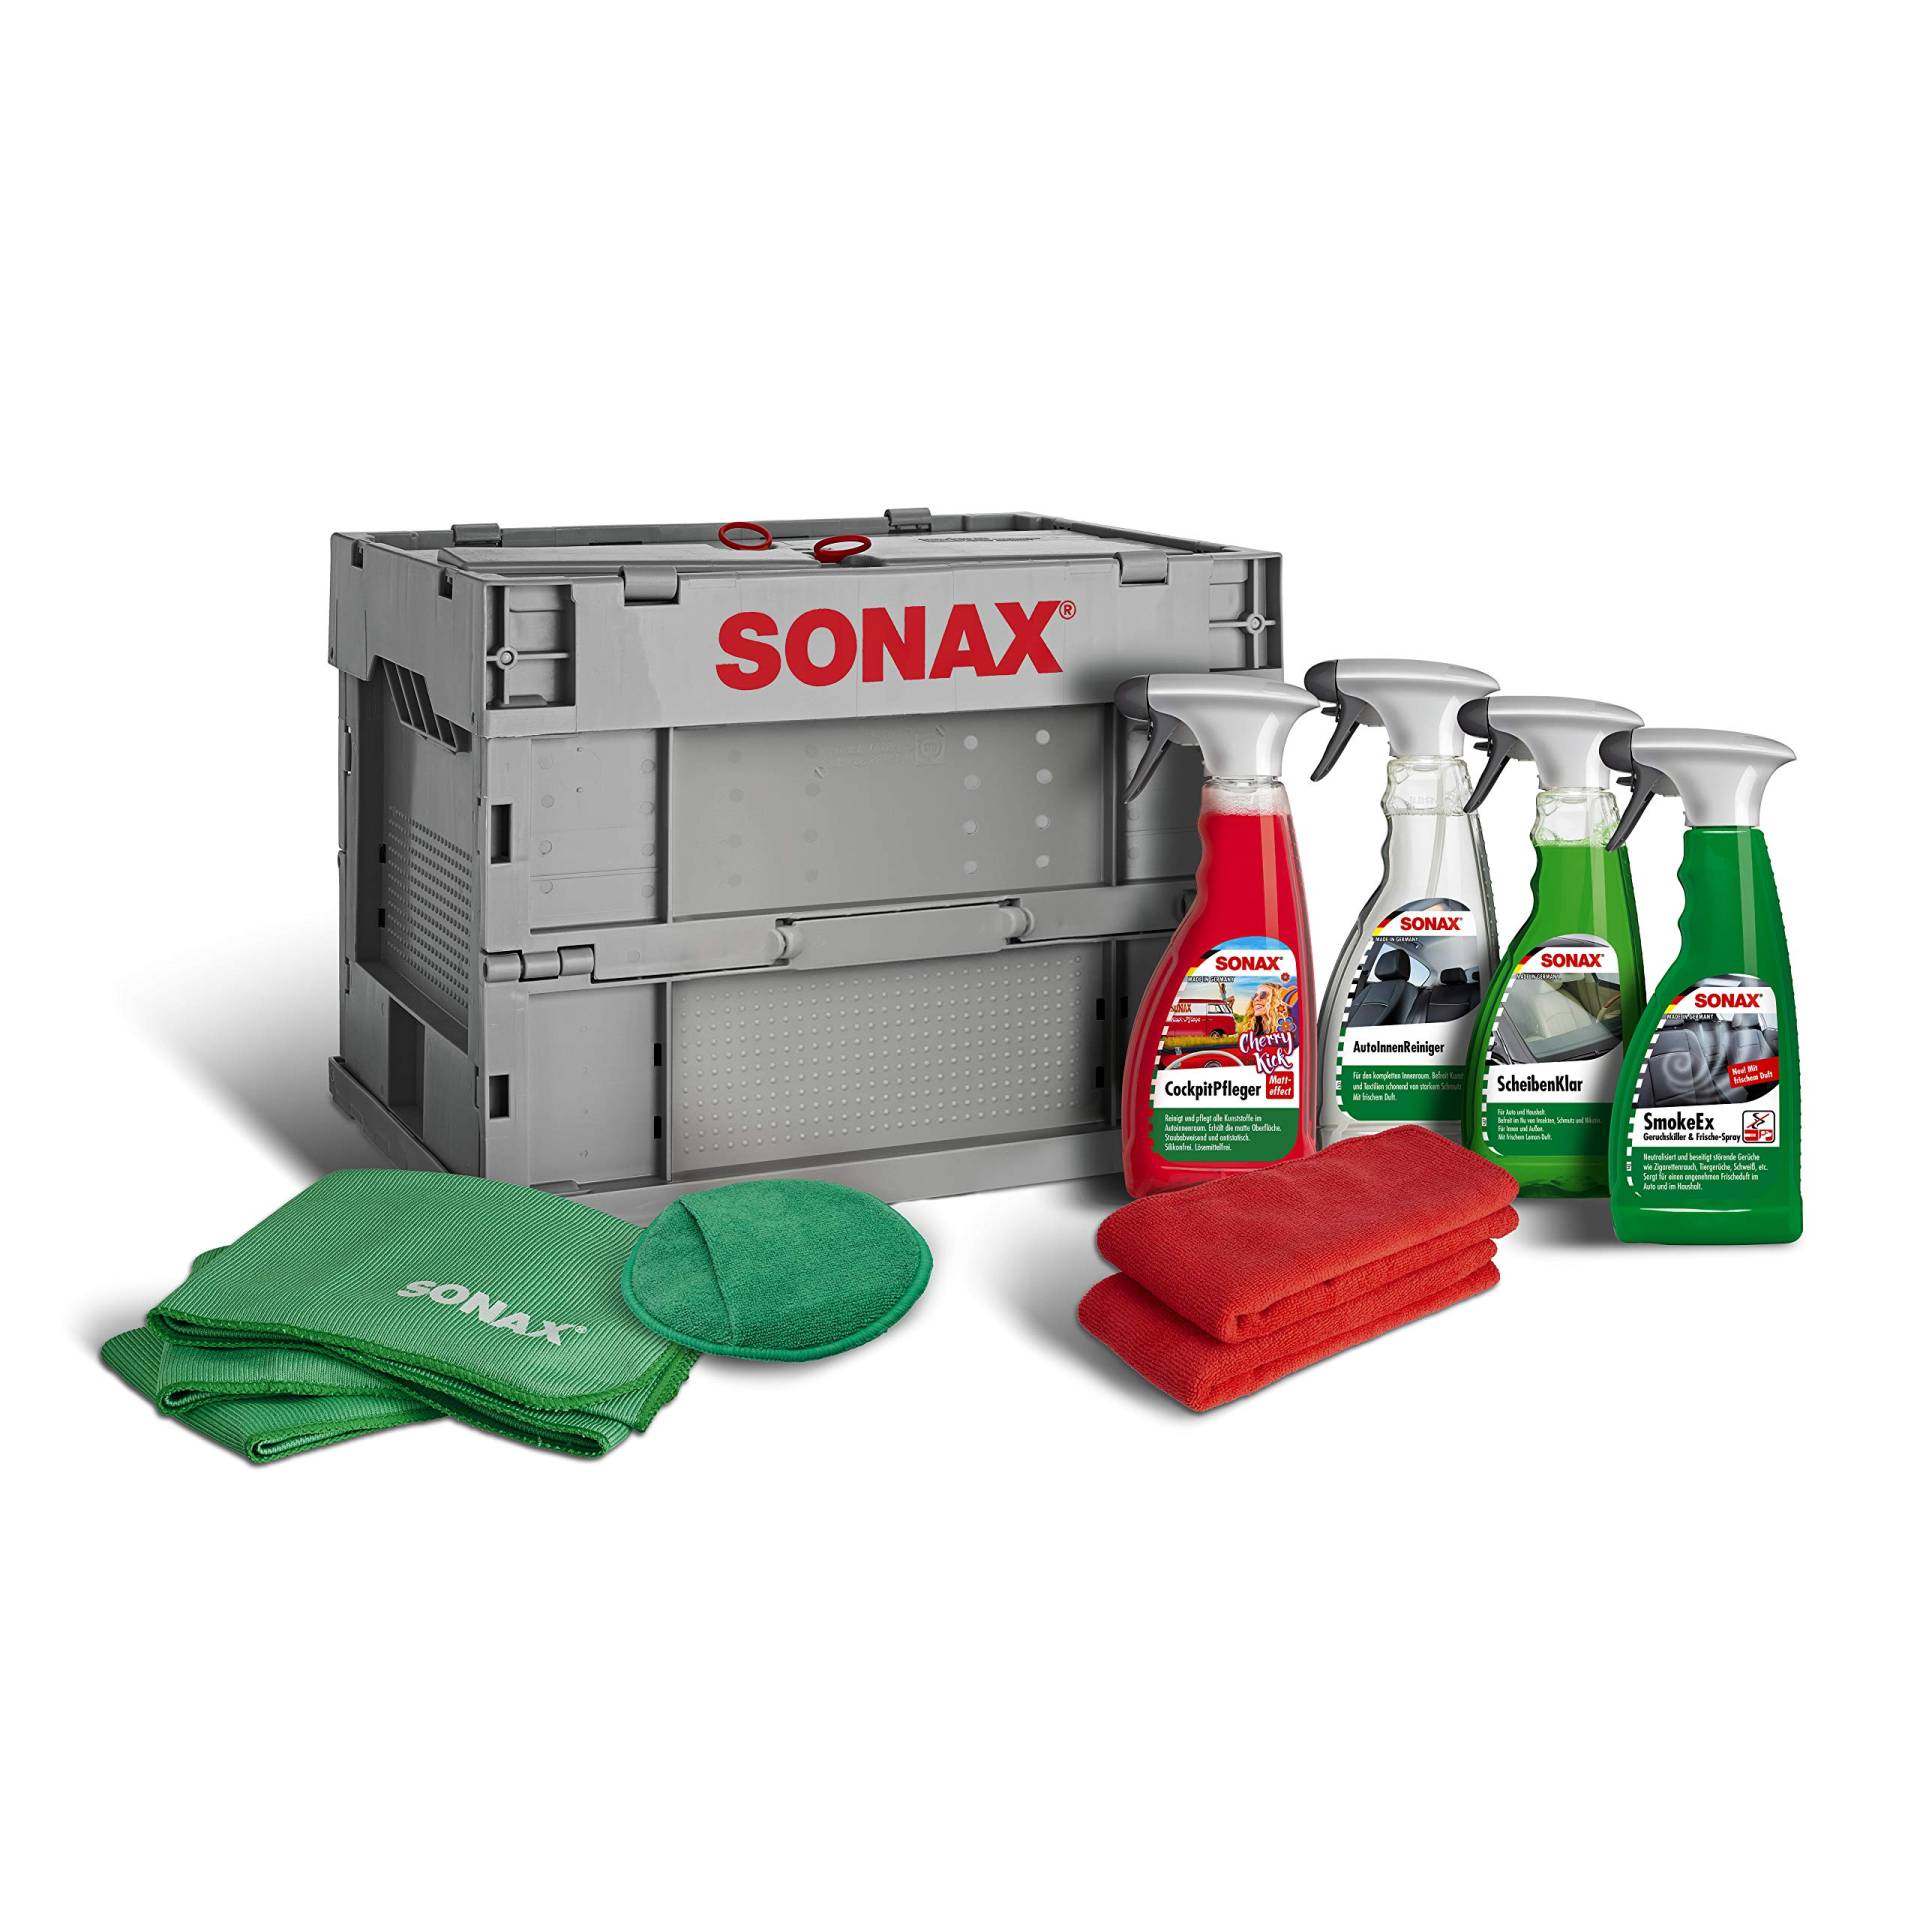 SONAX TruckerBox-Paket: Innenraumpflegebox (7-teilig) hochwertige Produkte + Zubehör für die Reinigung und Pflege im Innenraum, ideal für unterwegs | Art-Nr. 07685410 von SONAX